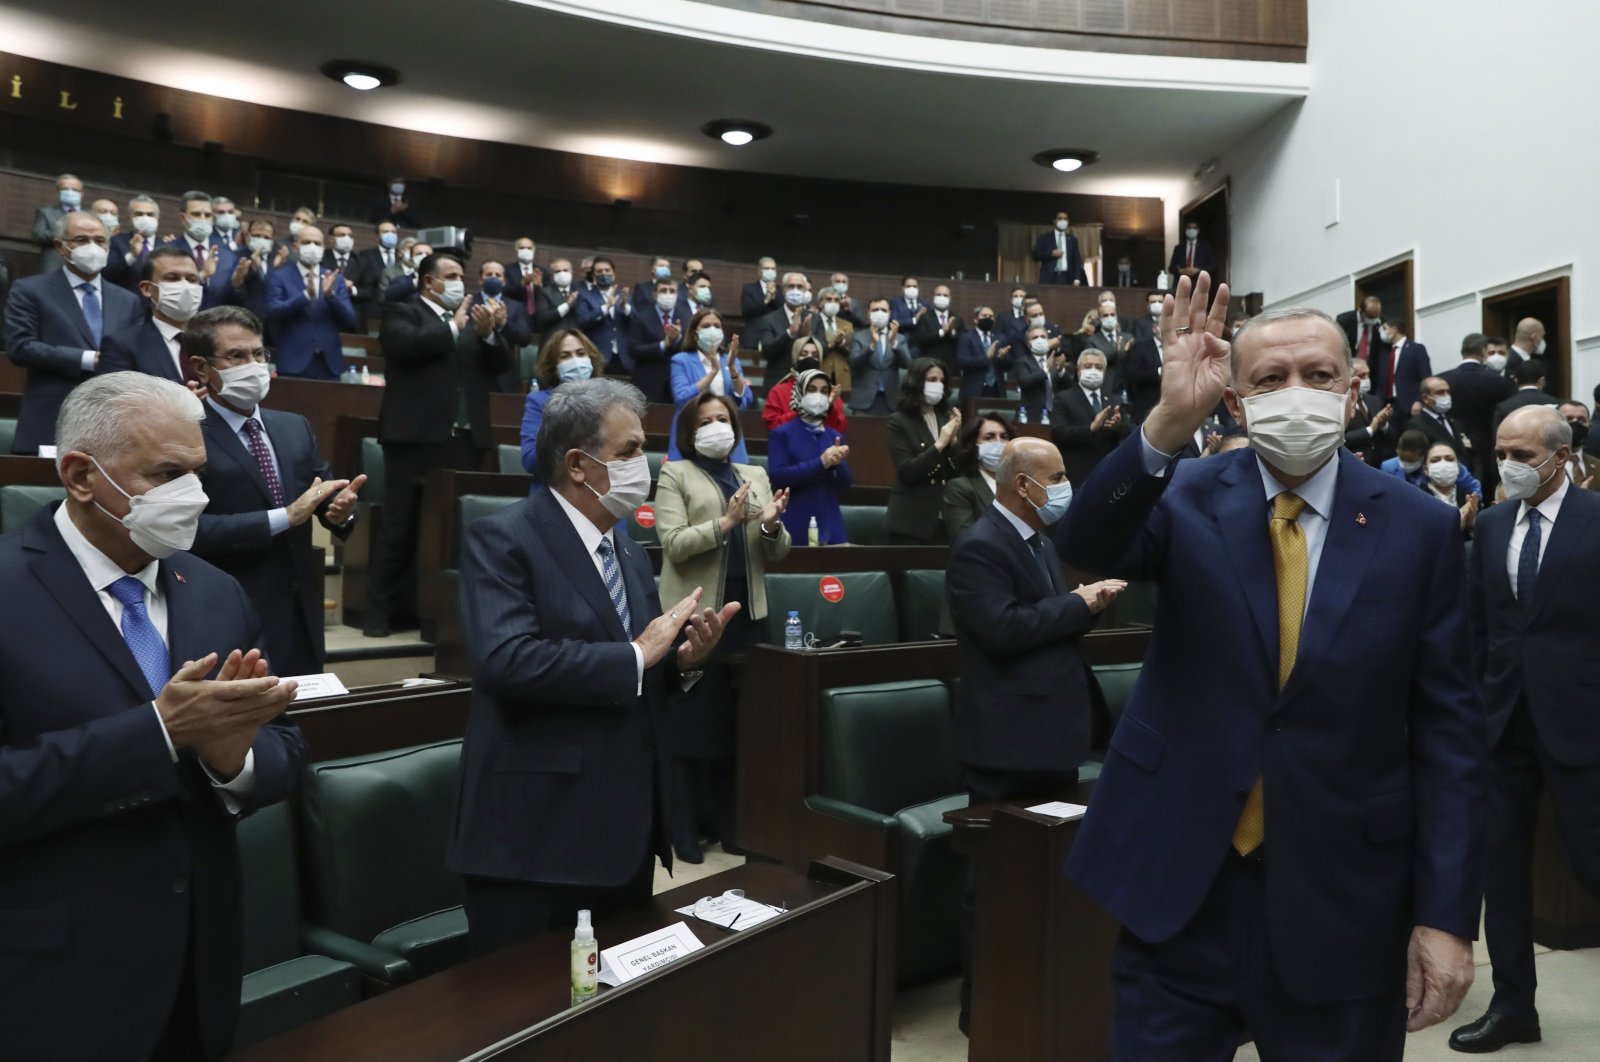 President Recep Tayyip Erdoğan gestures as he arrives to speak to his ruling party's lawmakers, in Ankara, Turkey, Dec. 23, 2020. (AP Photo)